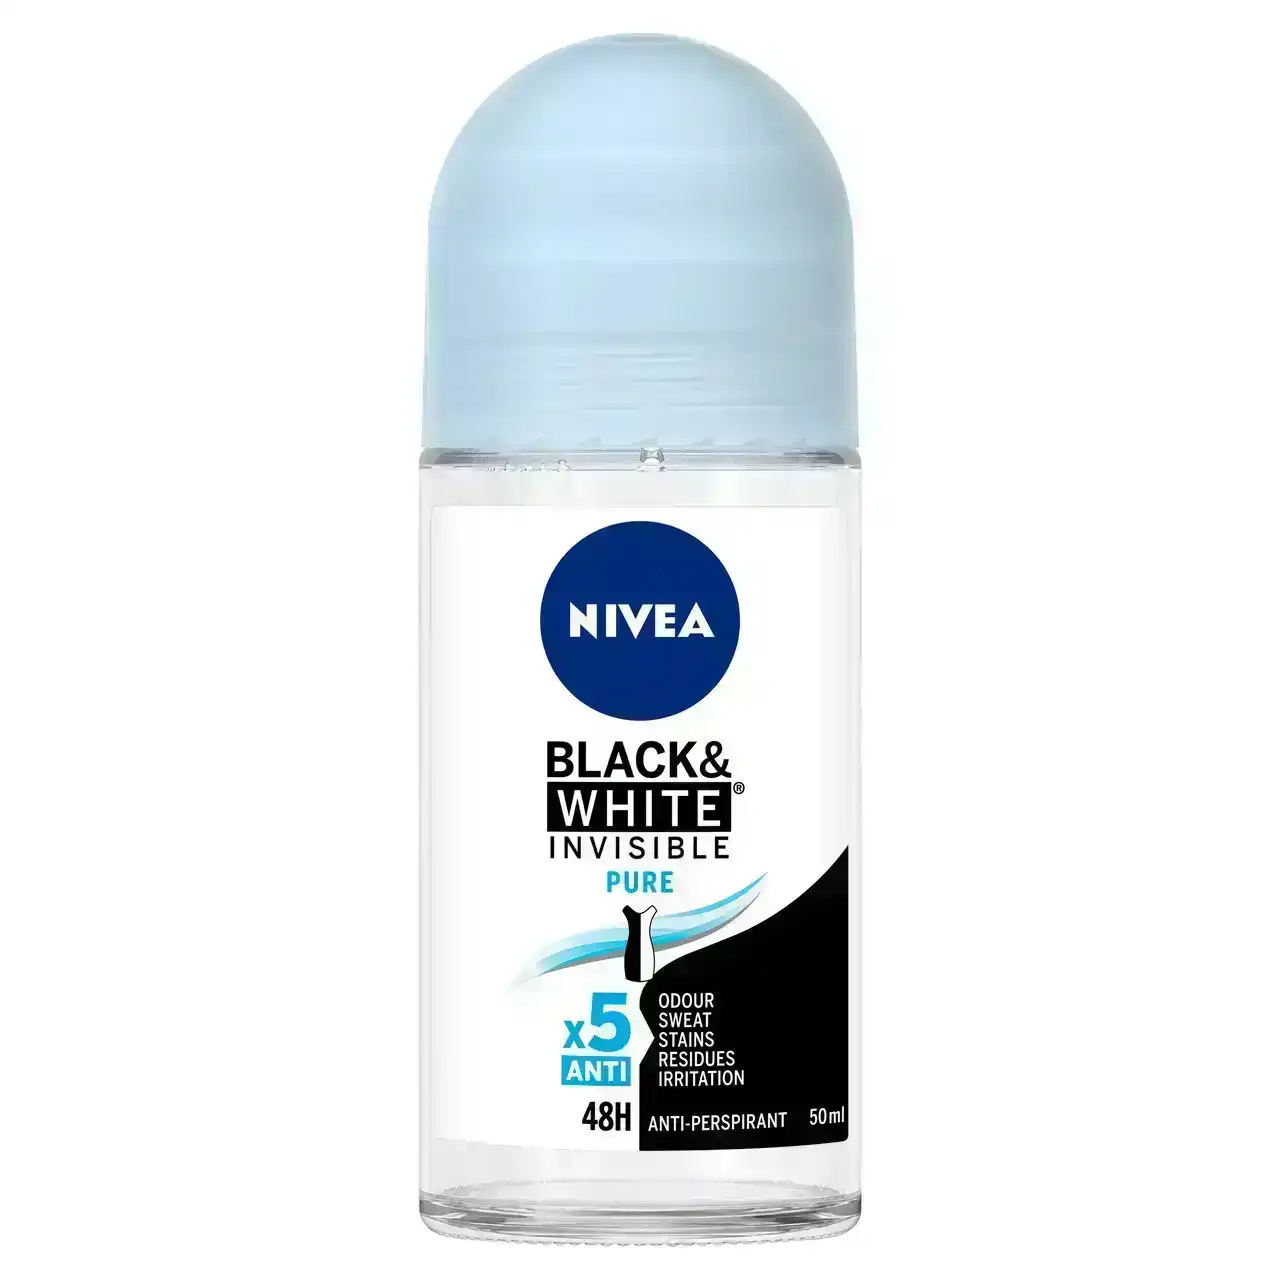 Nivea Black &amp; White Invisible Pure Anti-perspirant Roll-on Deodorant 50mL